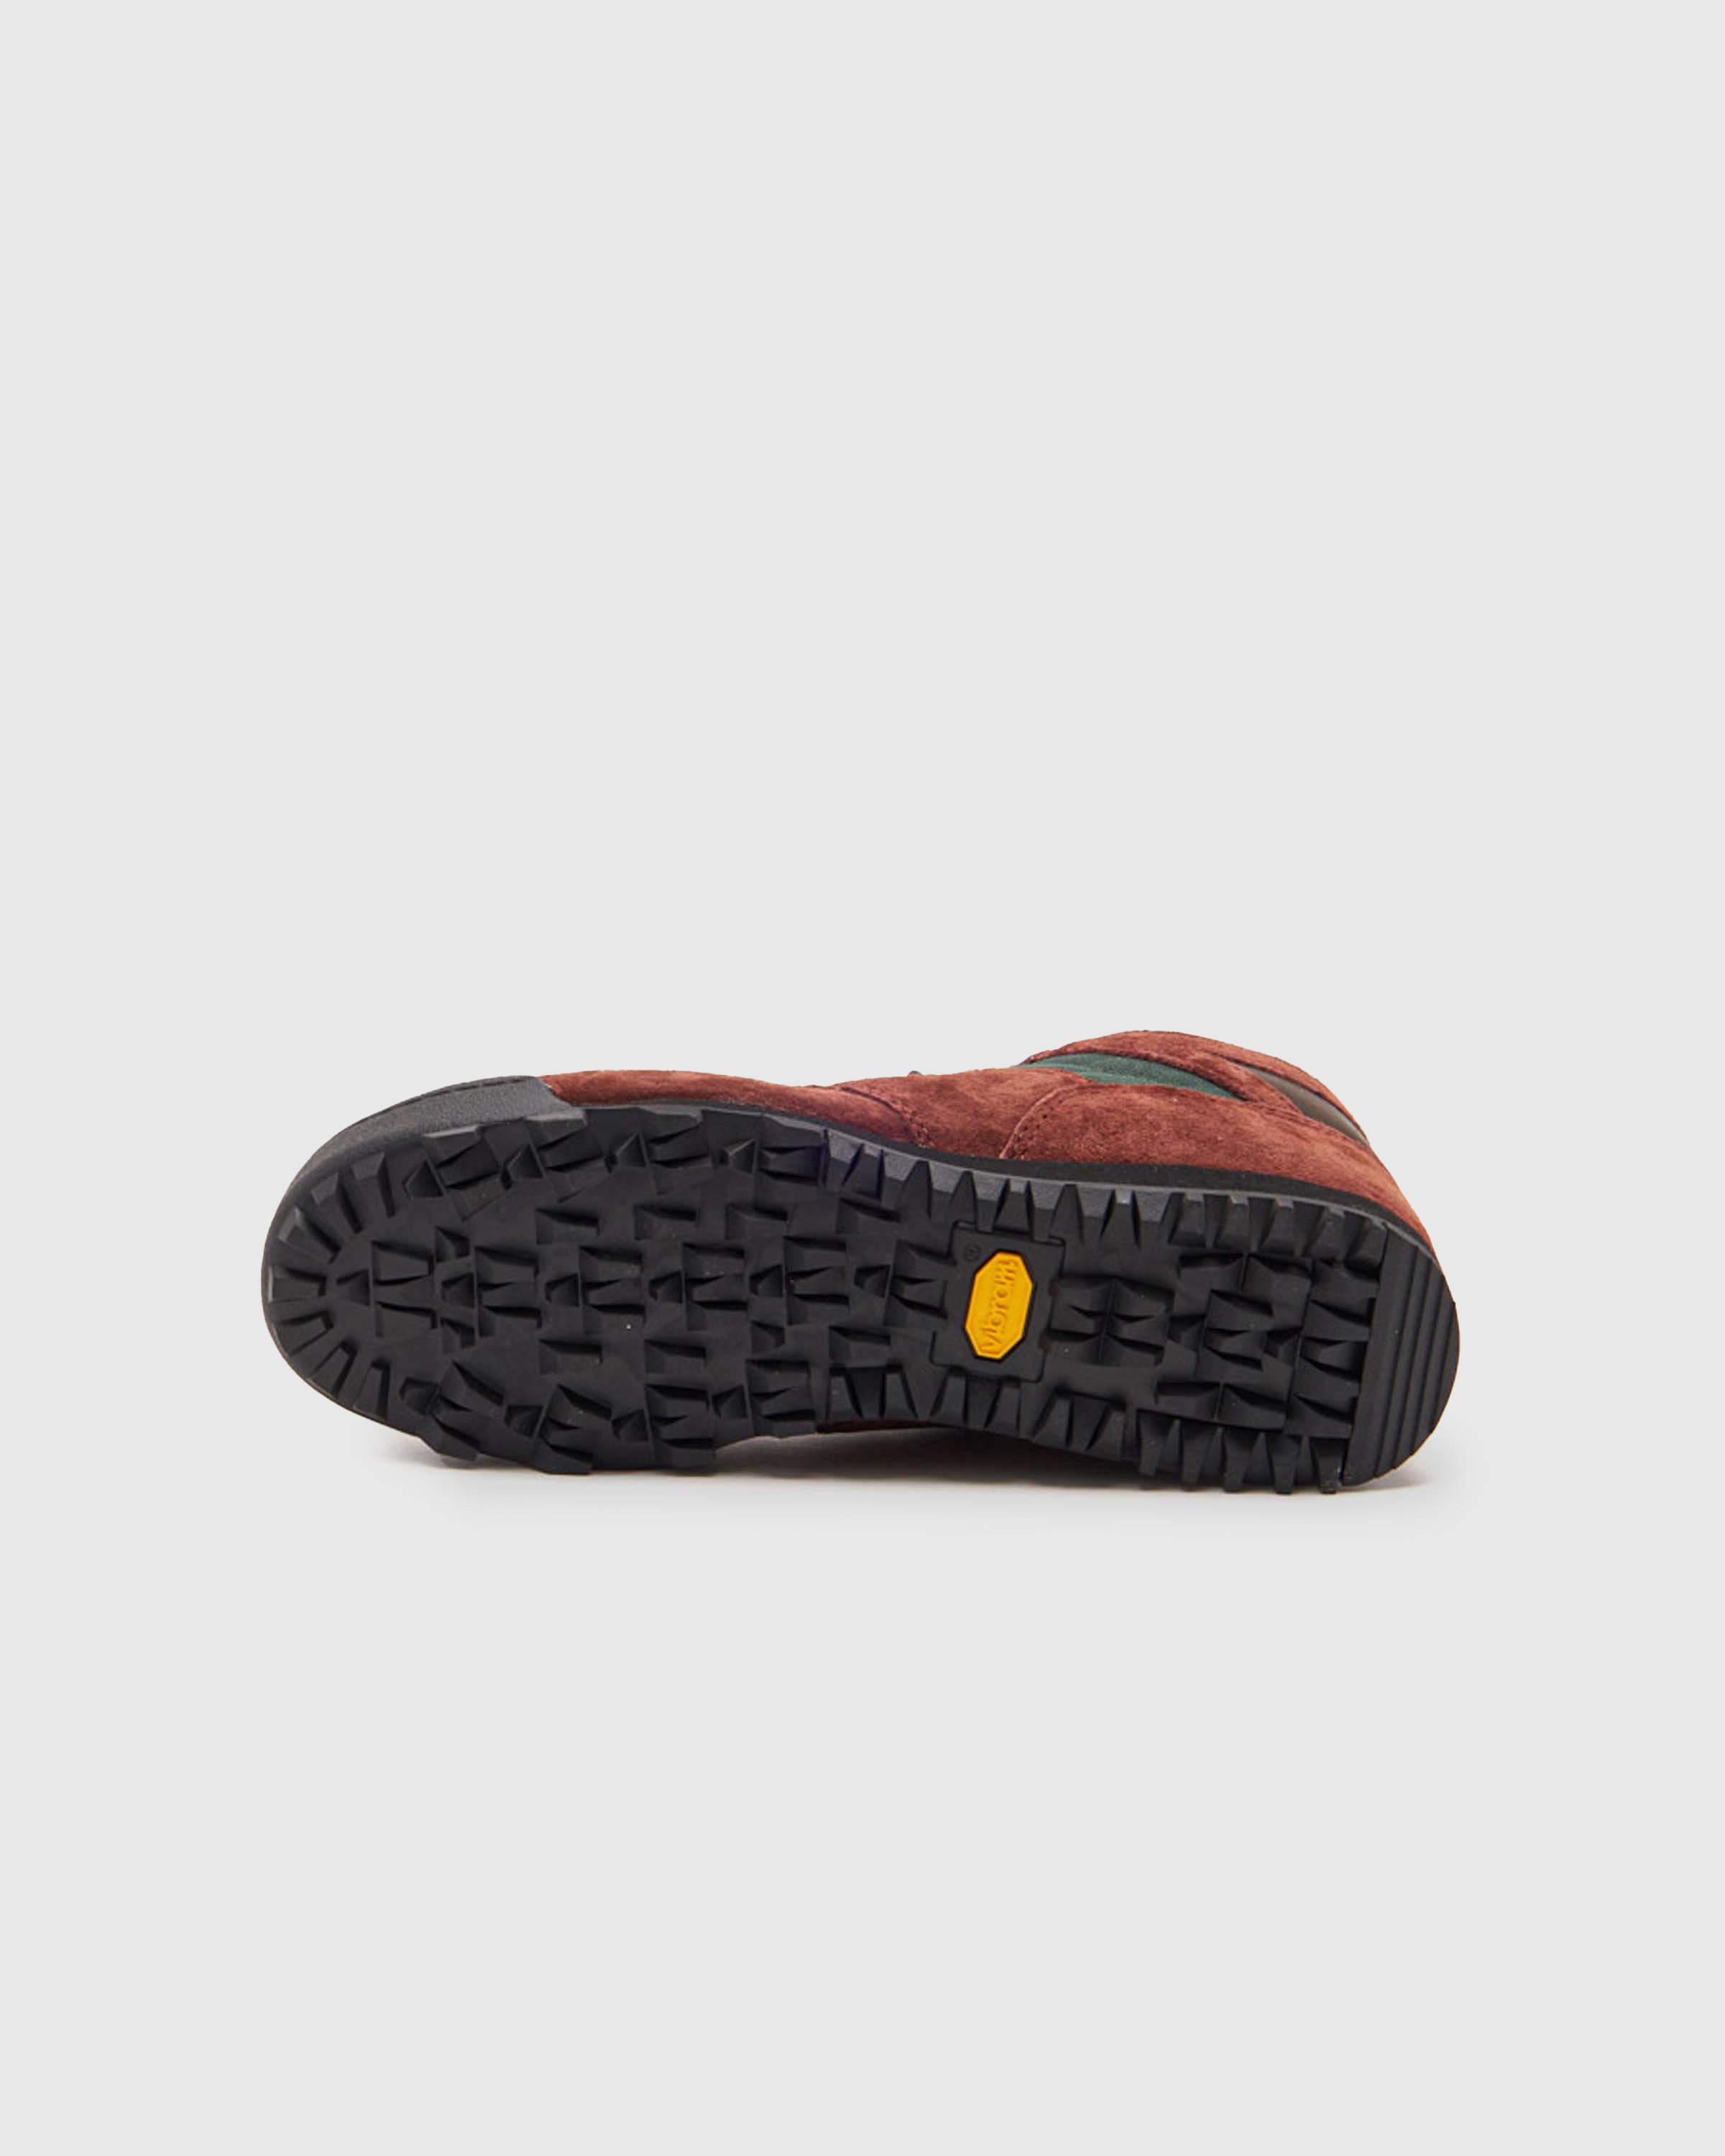 New Balance - URAINAC Marblehead - Footwear - Grey - Image 5